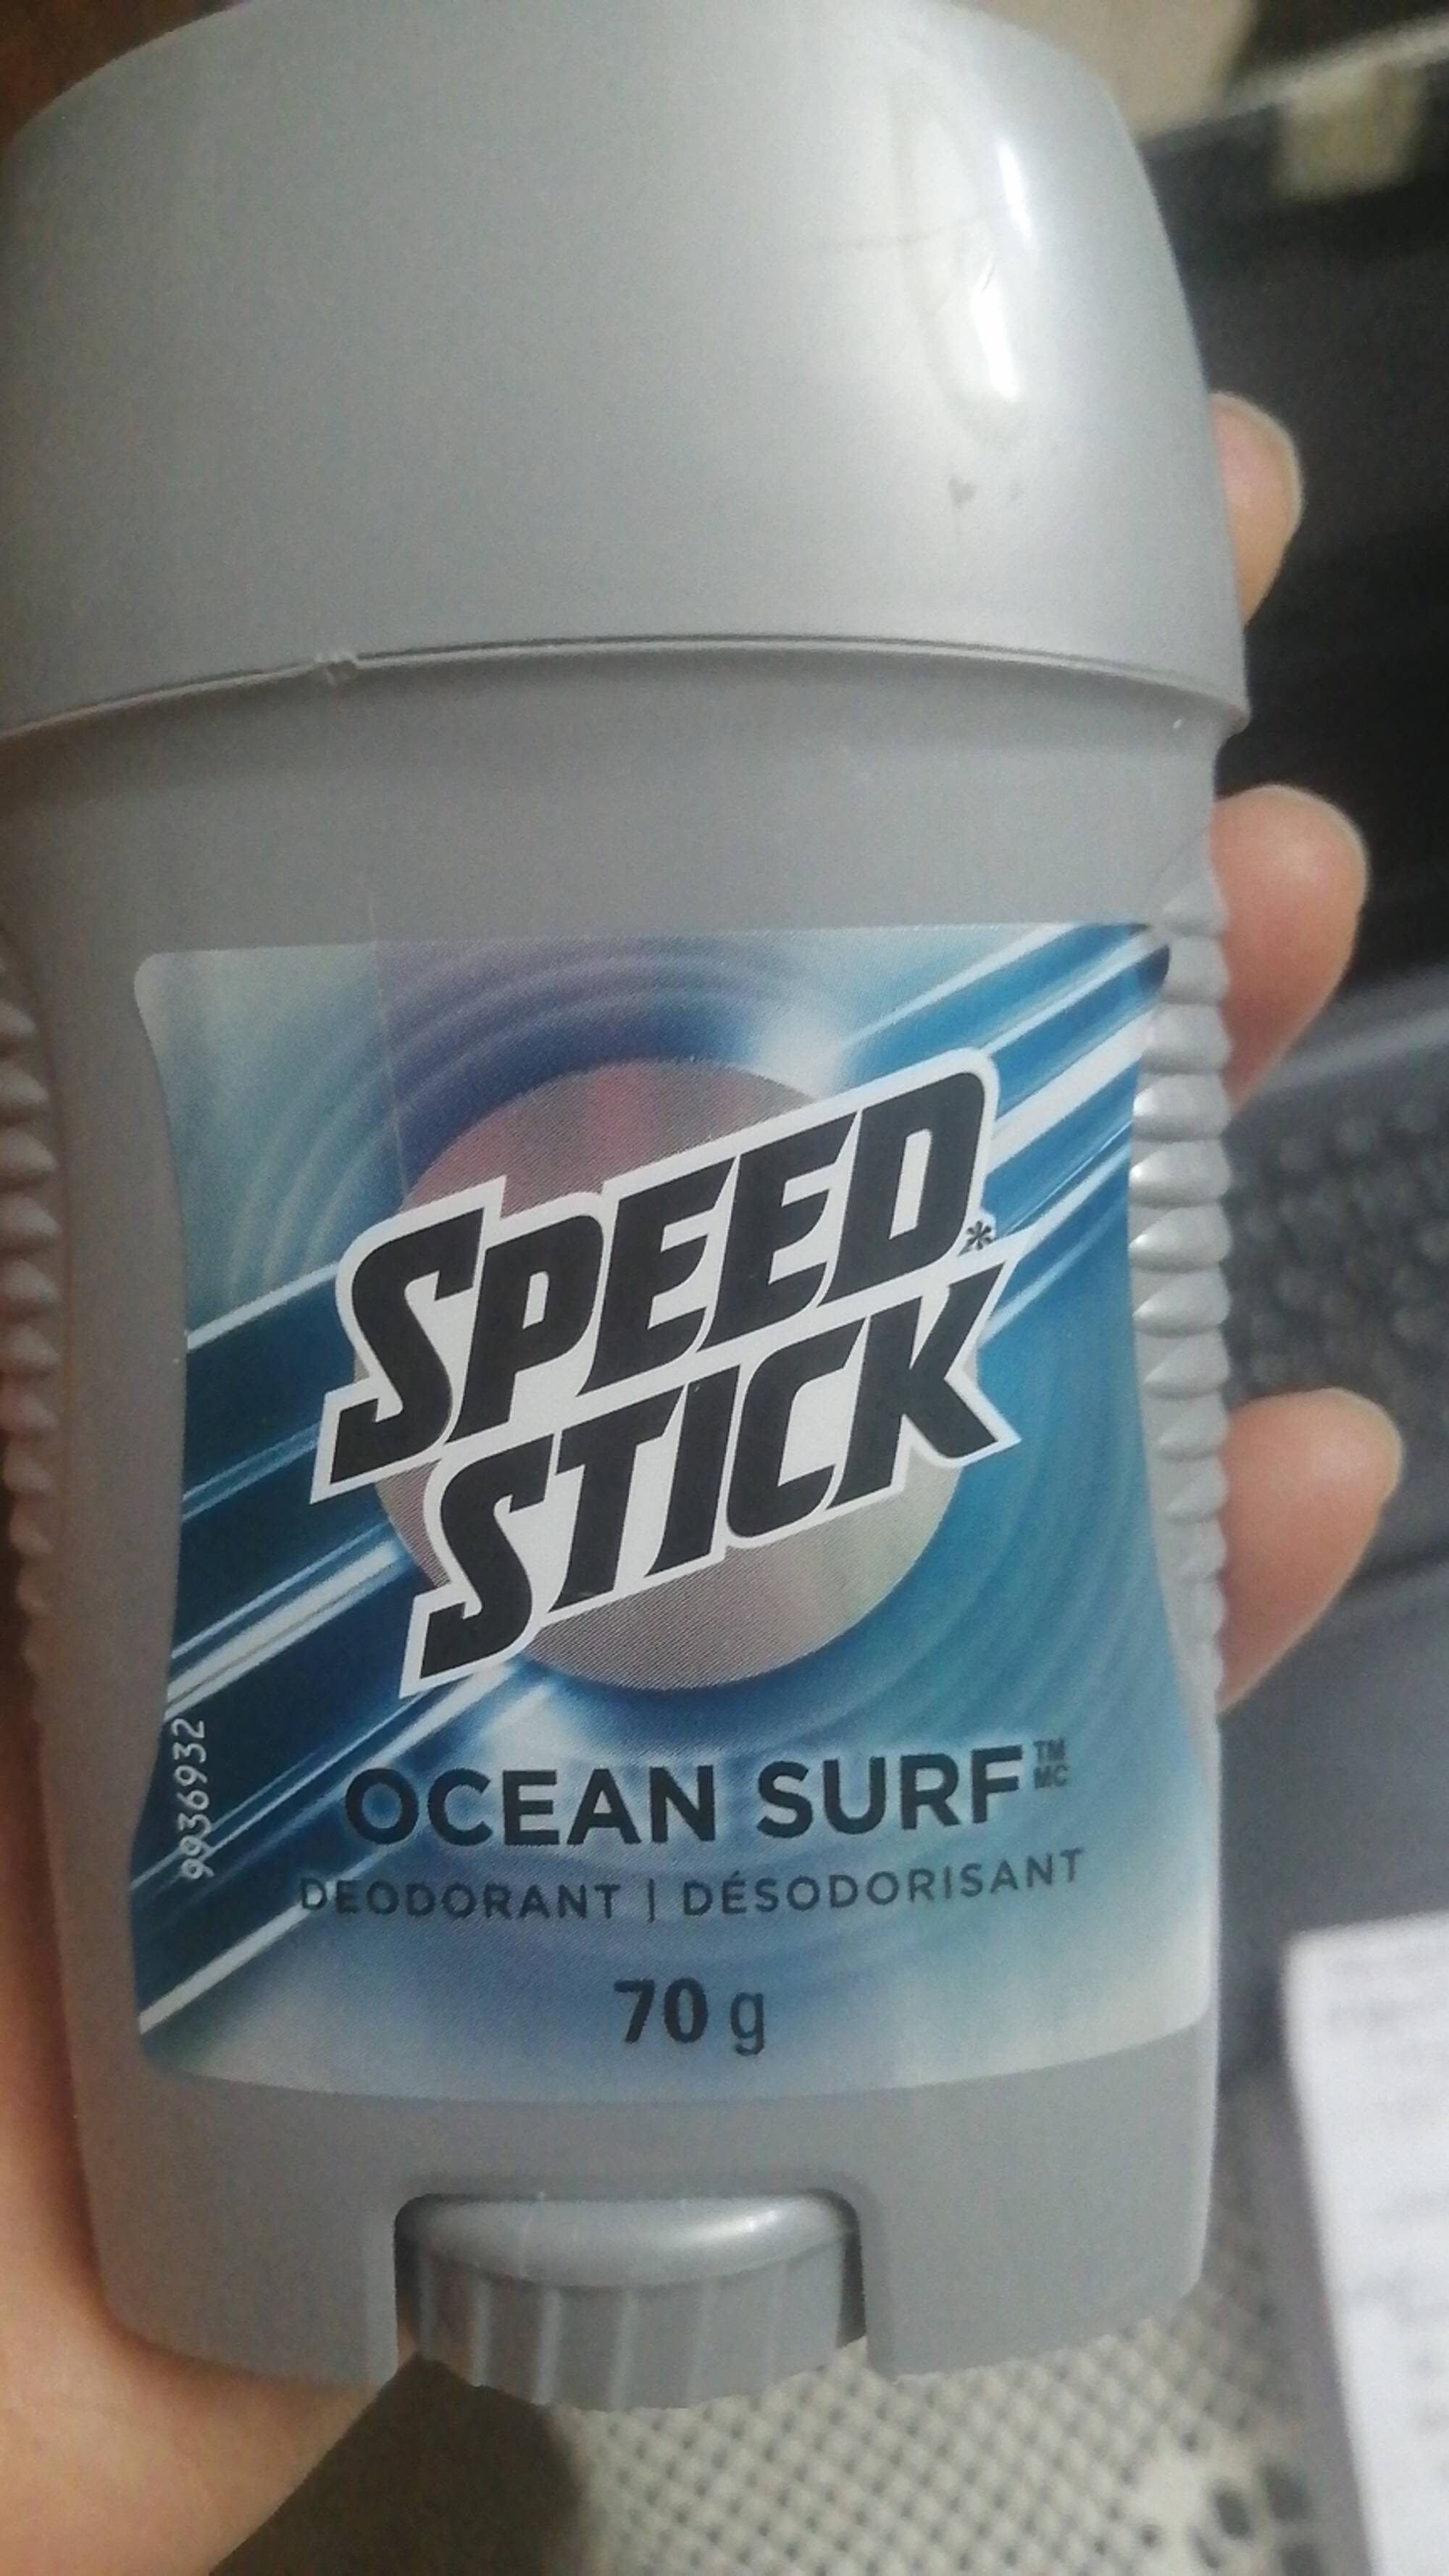 SPEED STICK - Ocean surf - Déodorant